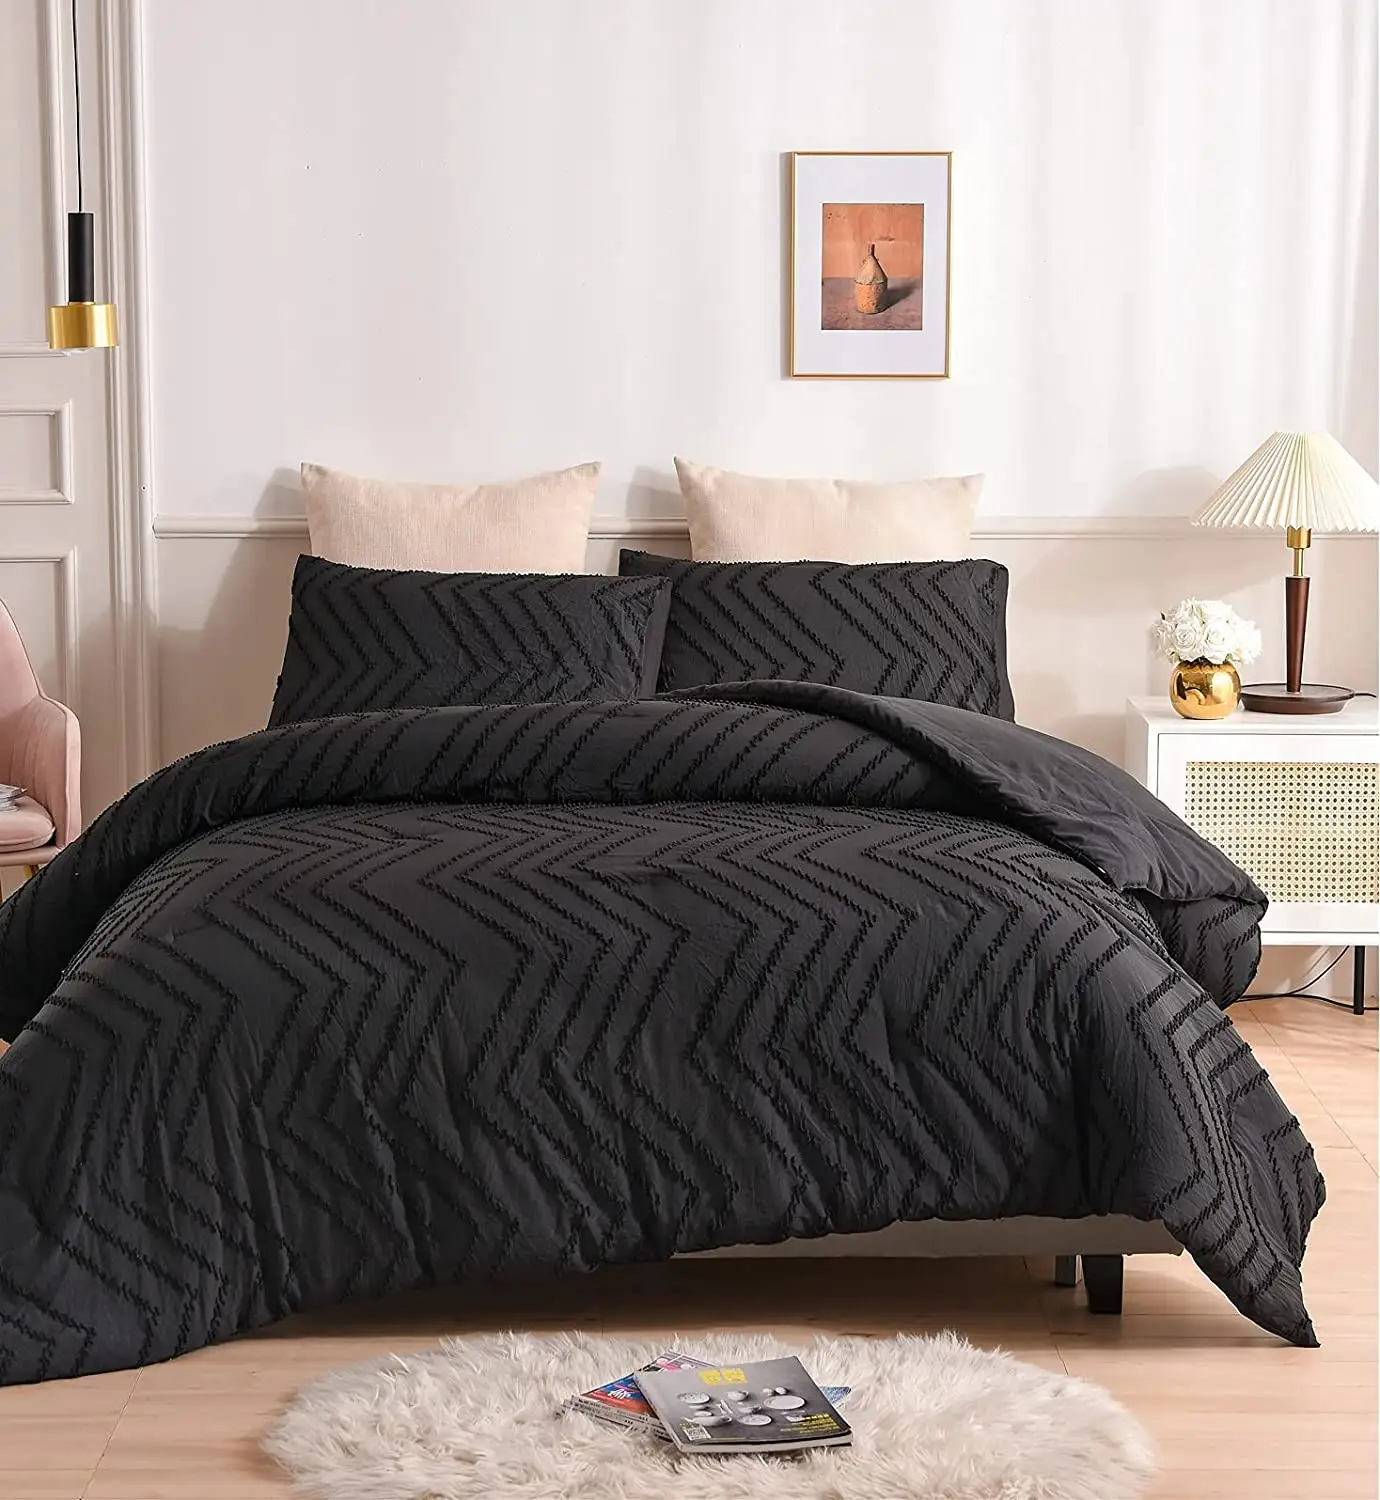 Fabrik Direkt verkauf Niedriger Preis Promotion High-End Home Textile Farbe Blumenmuster Benutzer definierte Baumwolle Atmungsaktive Bettlaken Serie